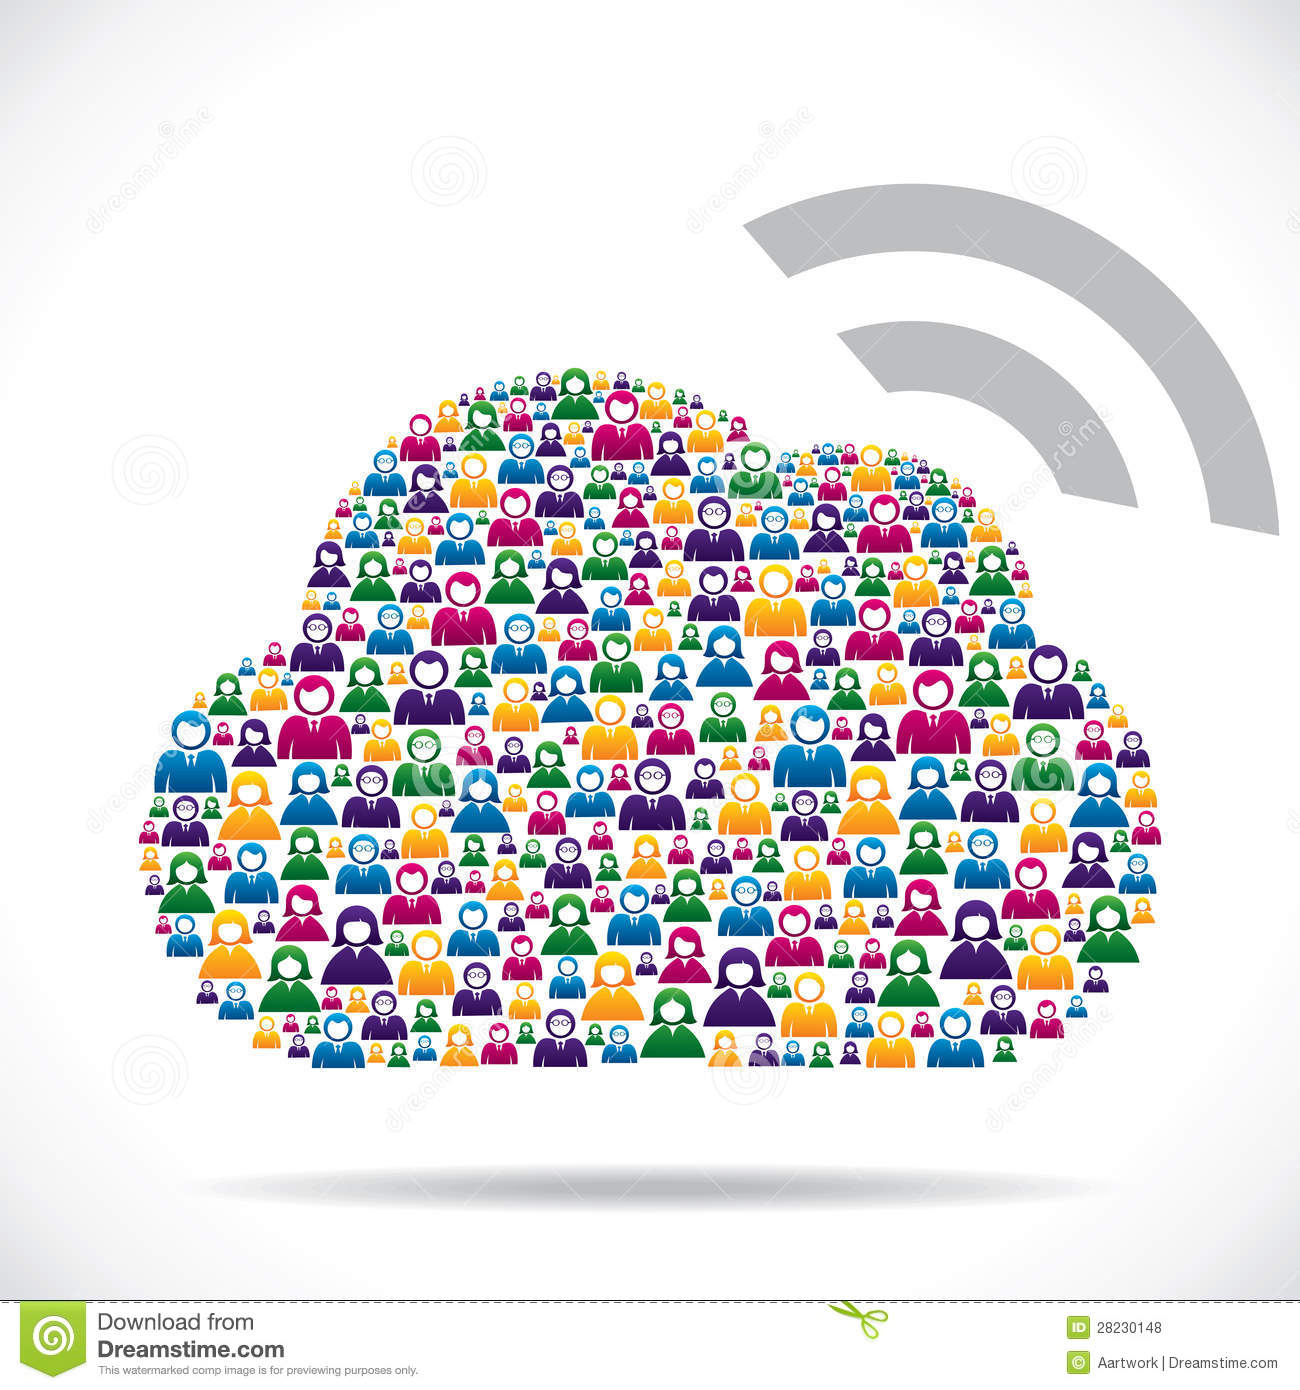 La nube y los ángeles virtuales: Social media